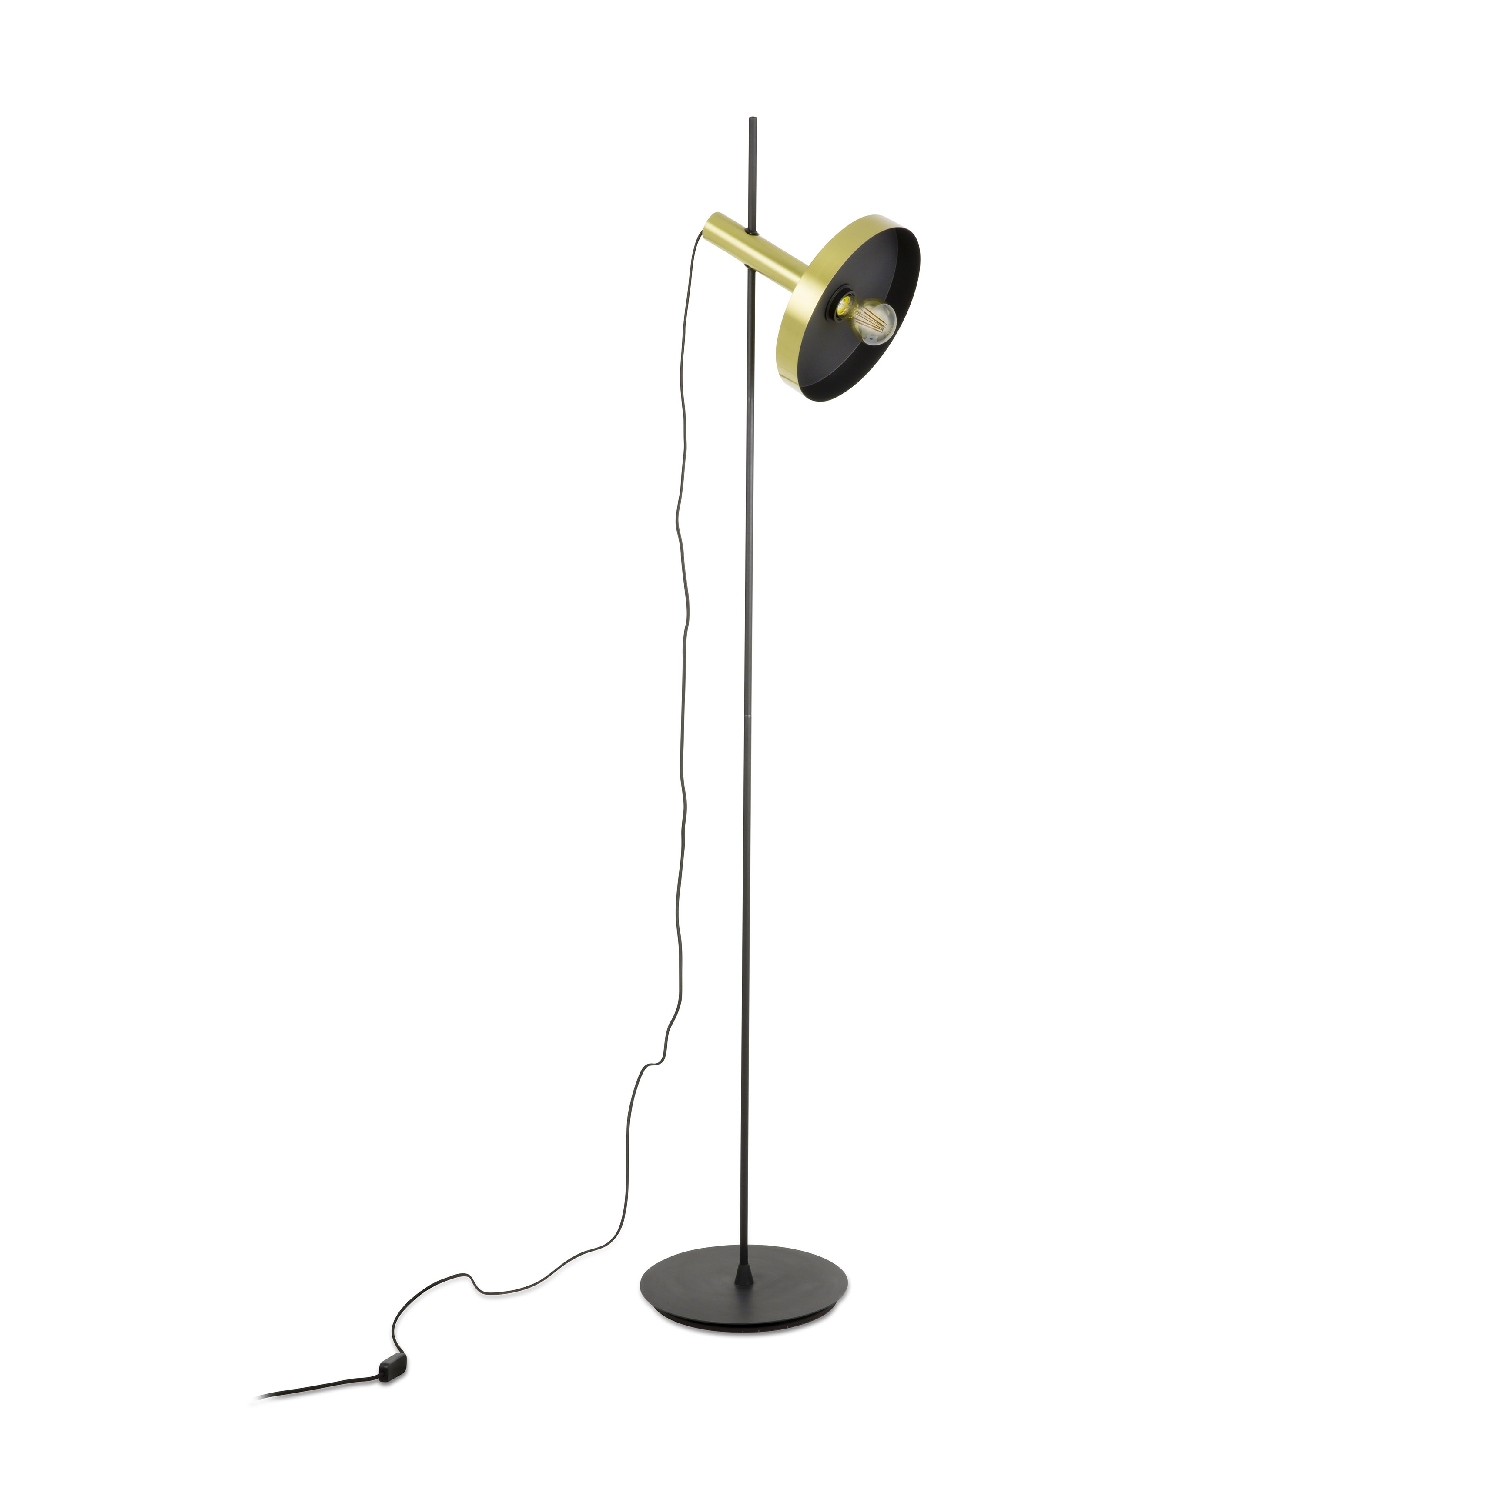 Lampadar / Lampa de podea design modern WHIZZ auriu/negru 20164-96